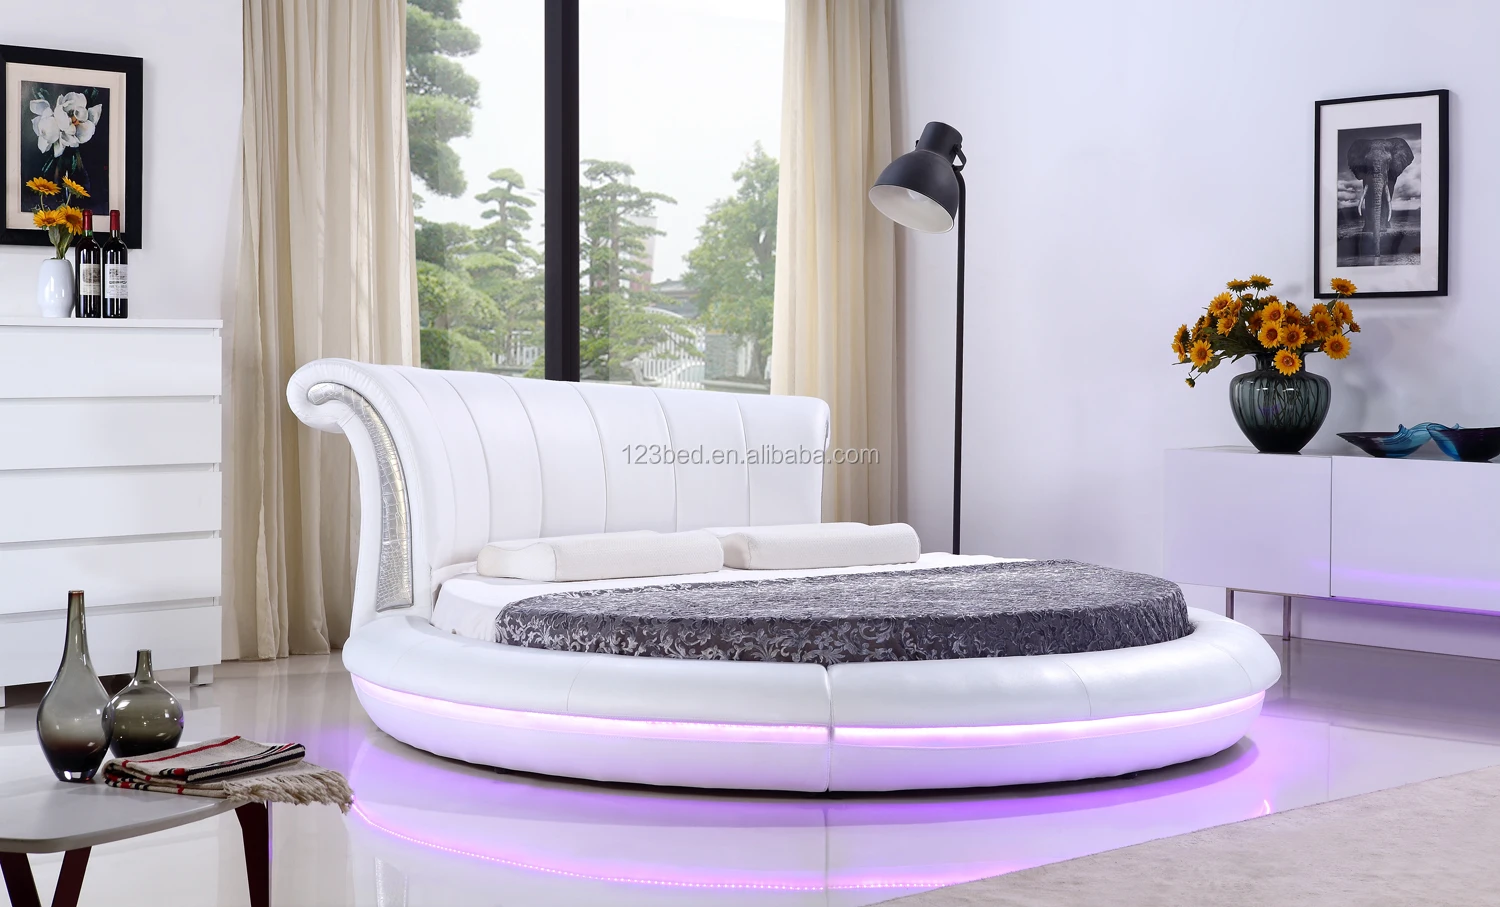 Круглая кровать с подсветкой